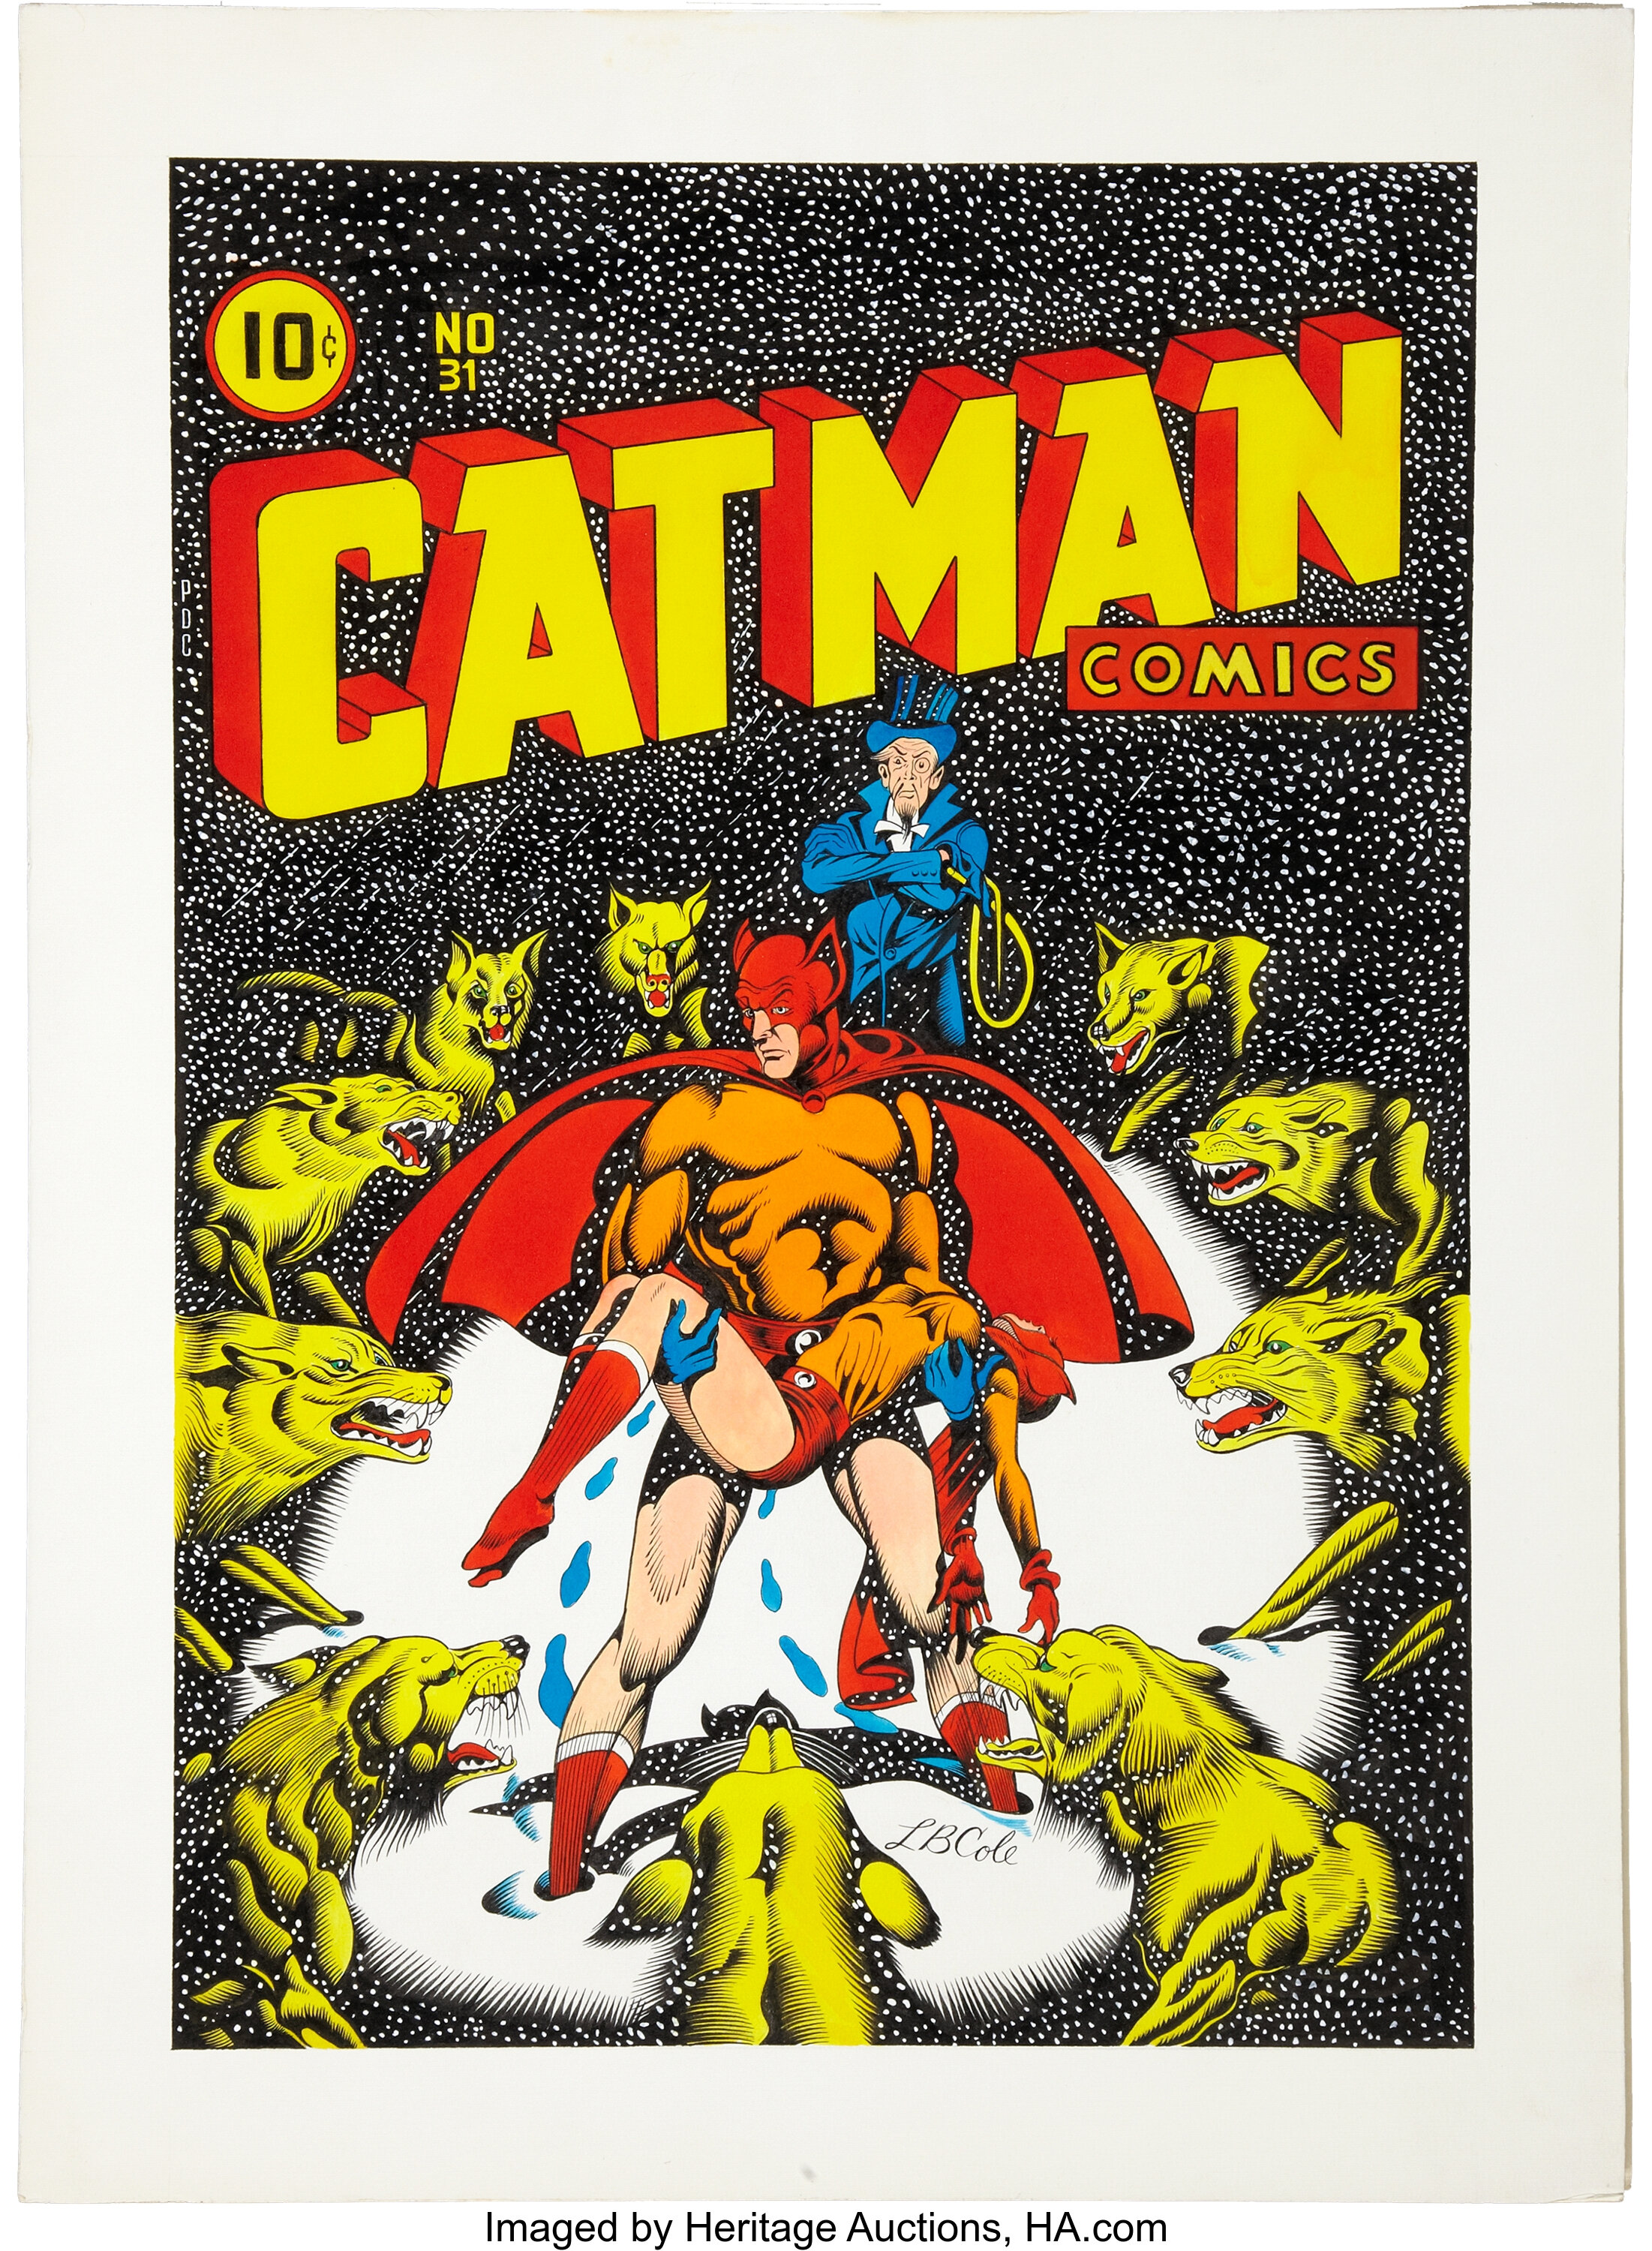 L. B. Cole Catman Comics #31 Cover Re-Creation Original Art | Lot #92051 |  Heritage Auctions